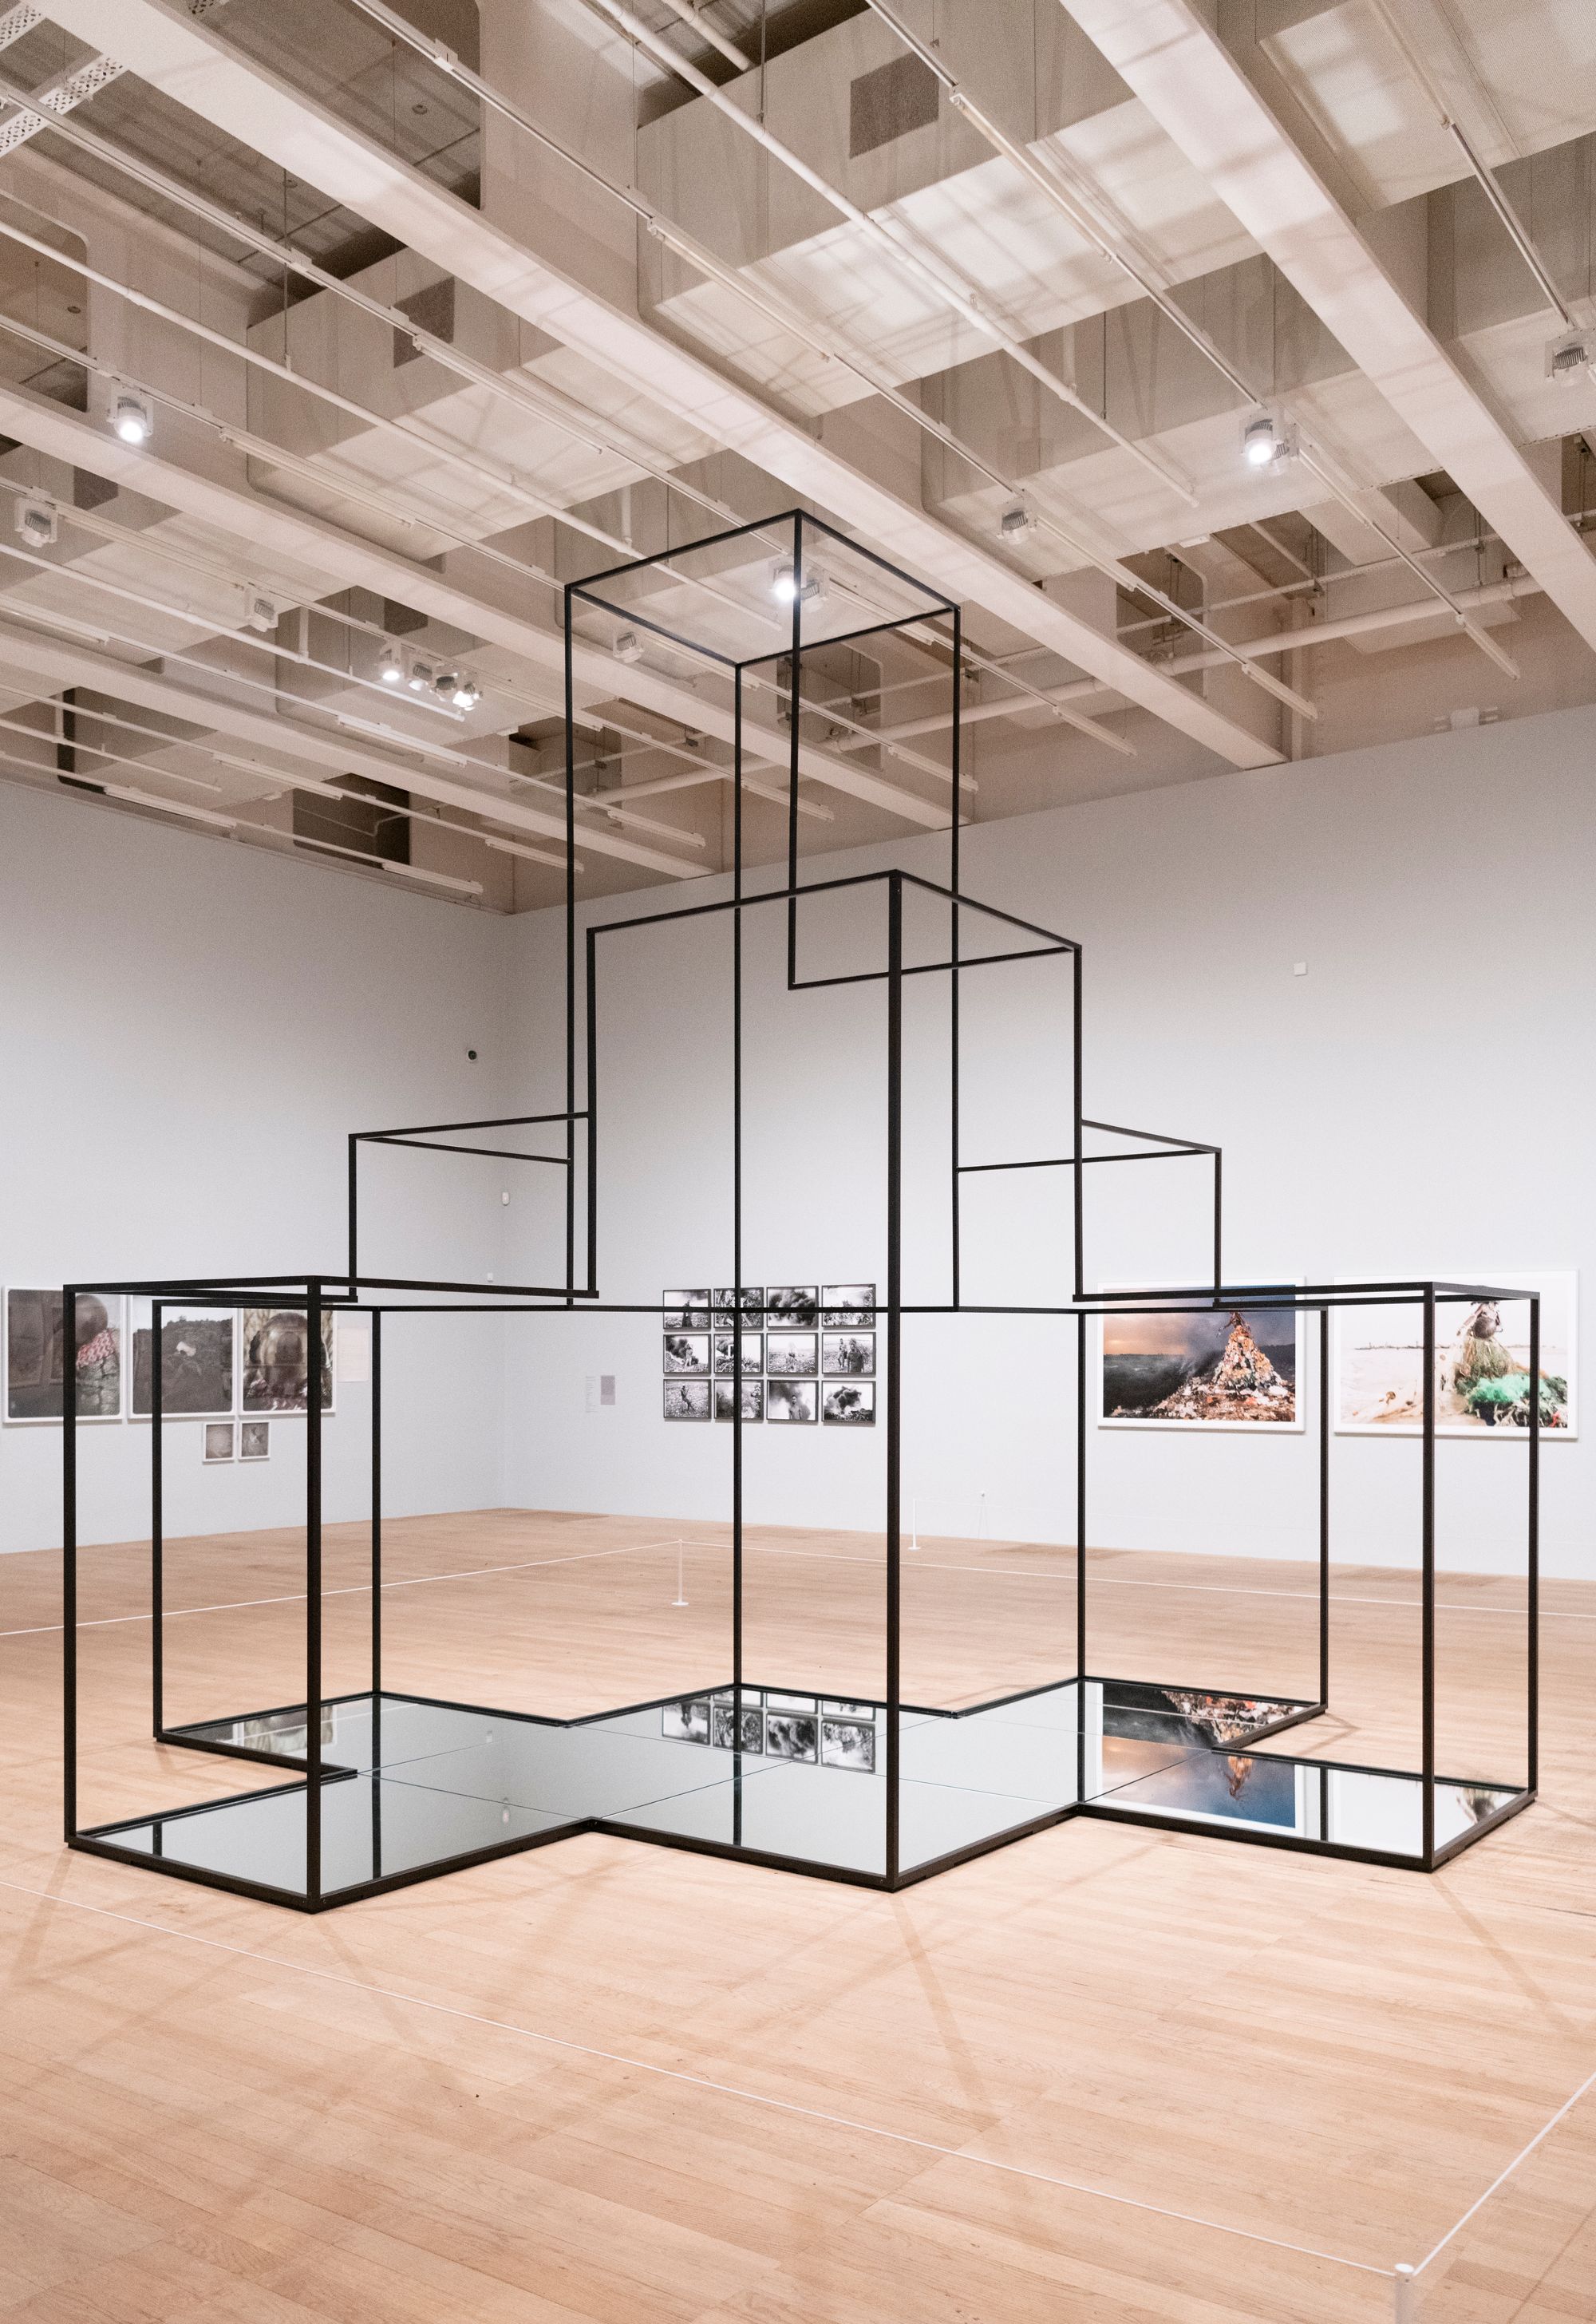 Artistas lusófonos expõem fotografias no Tate Modern, em Londres